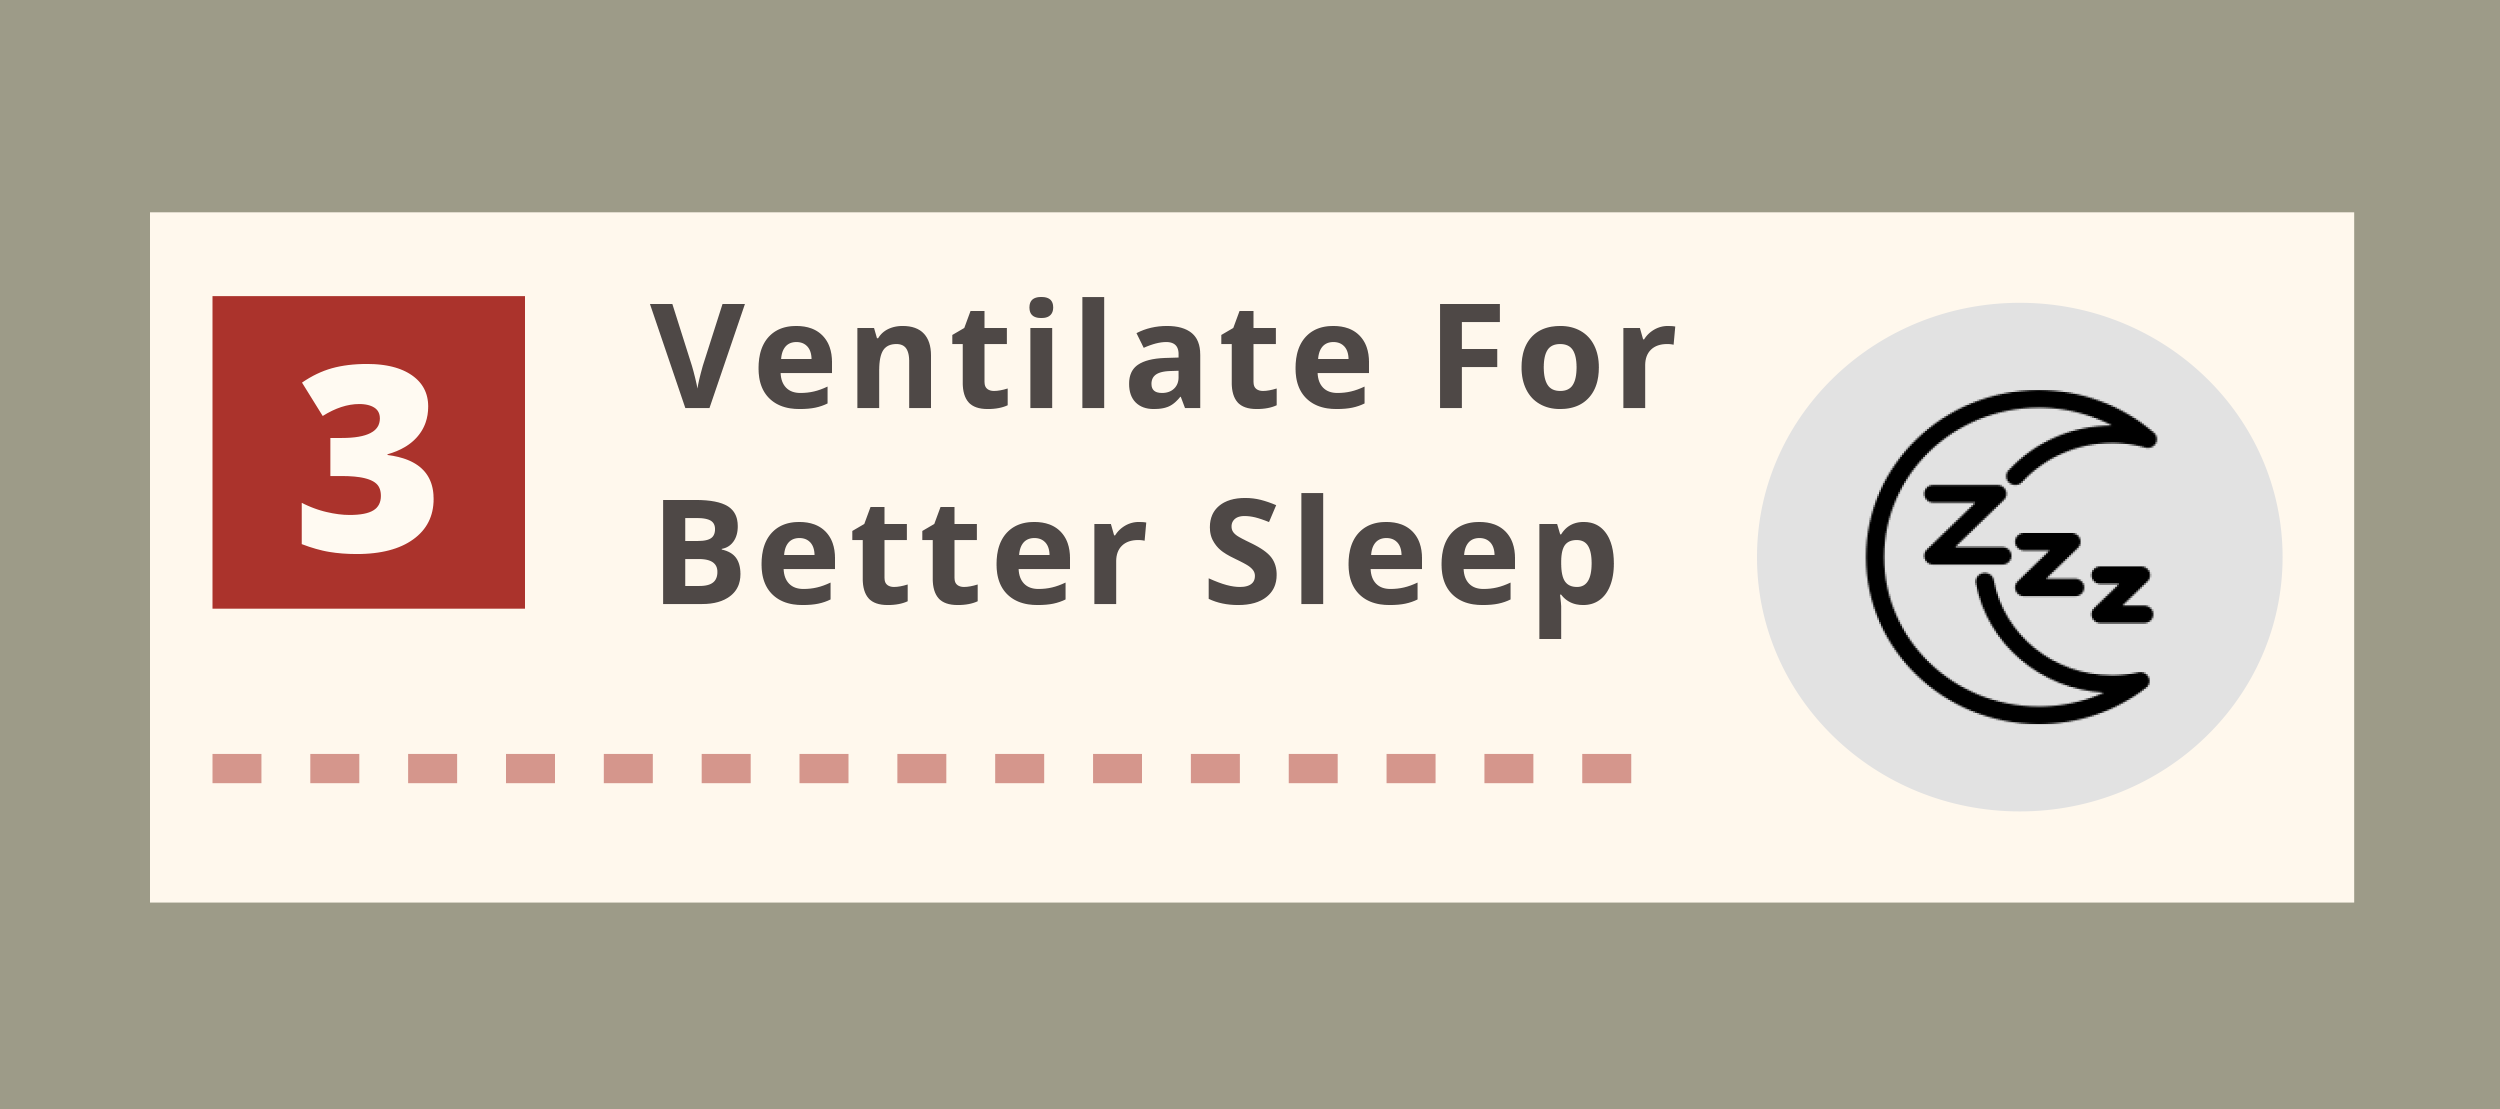 Ventilate for Better Sleep